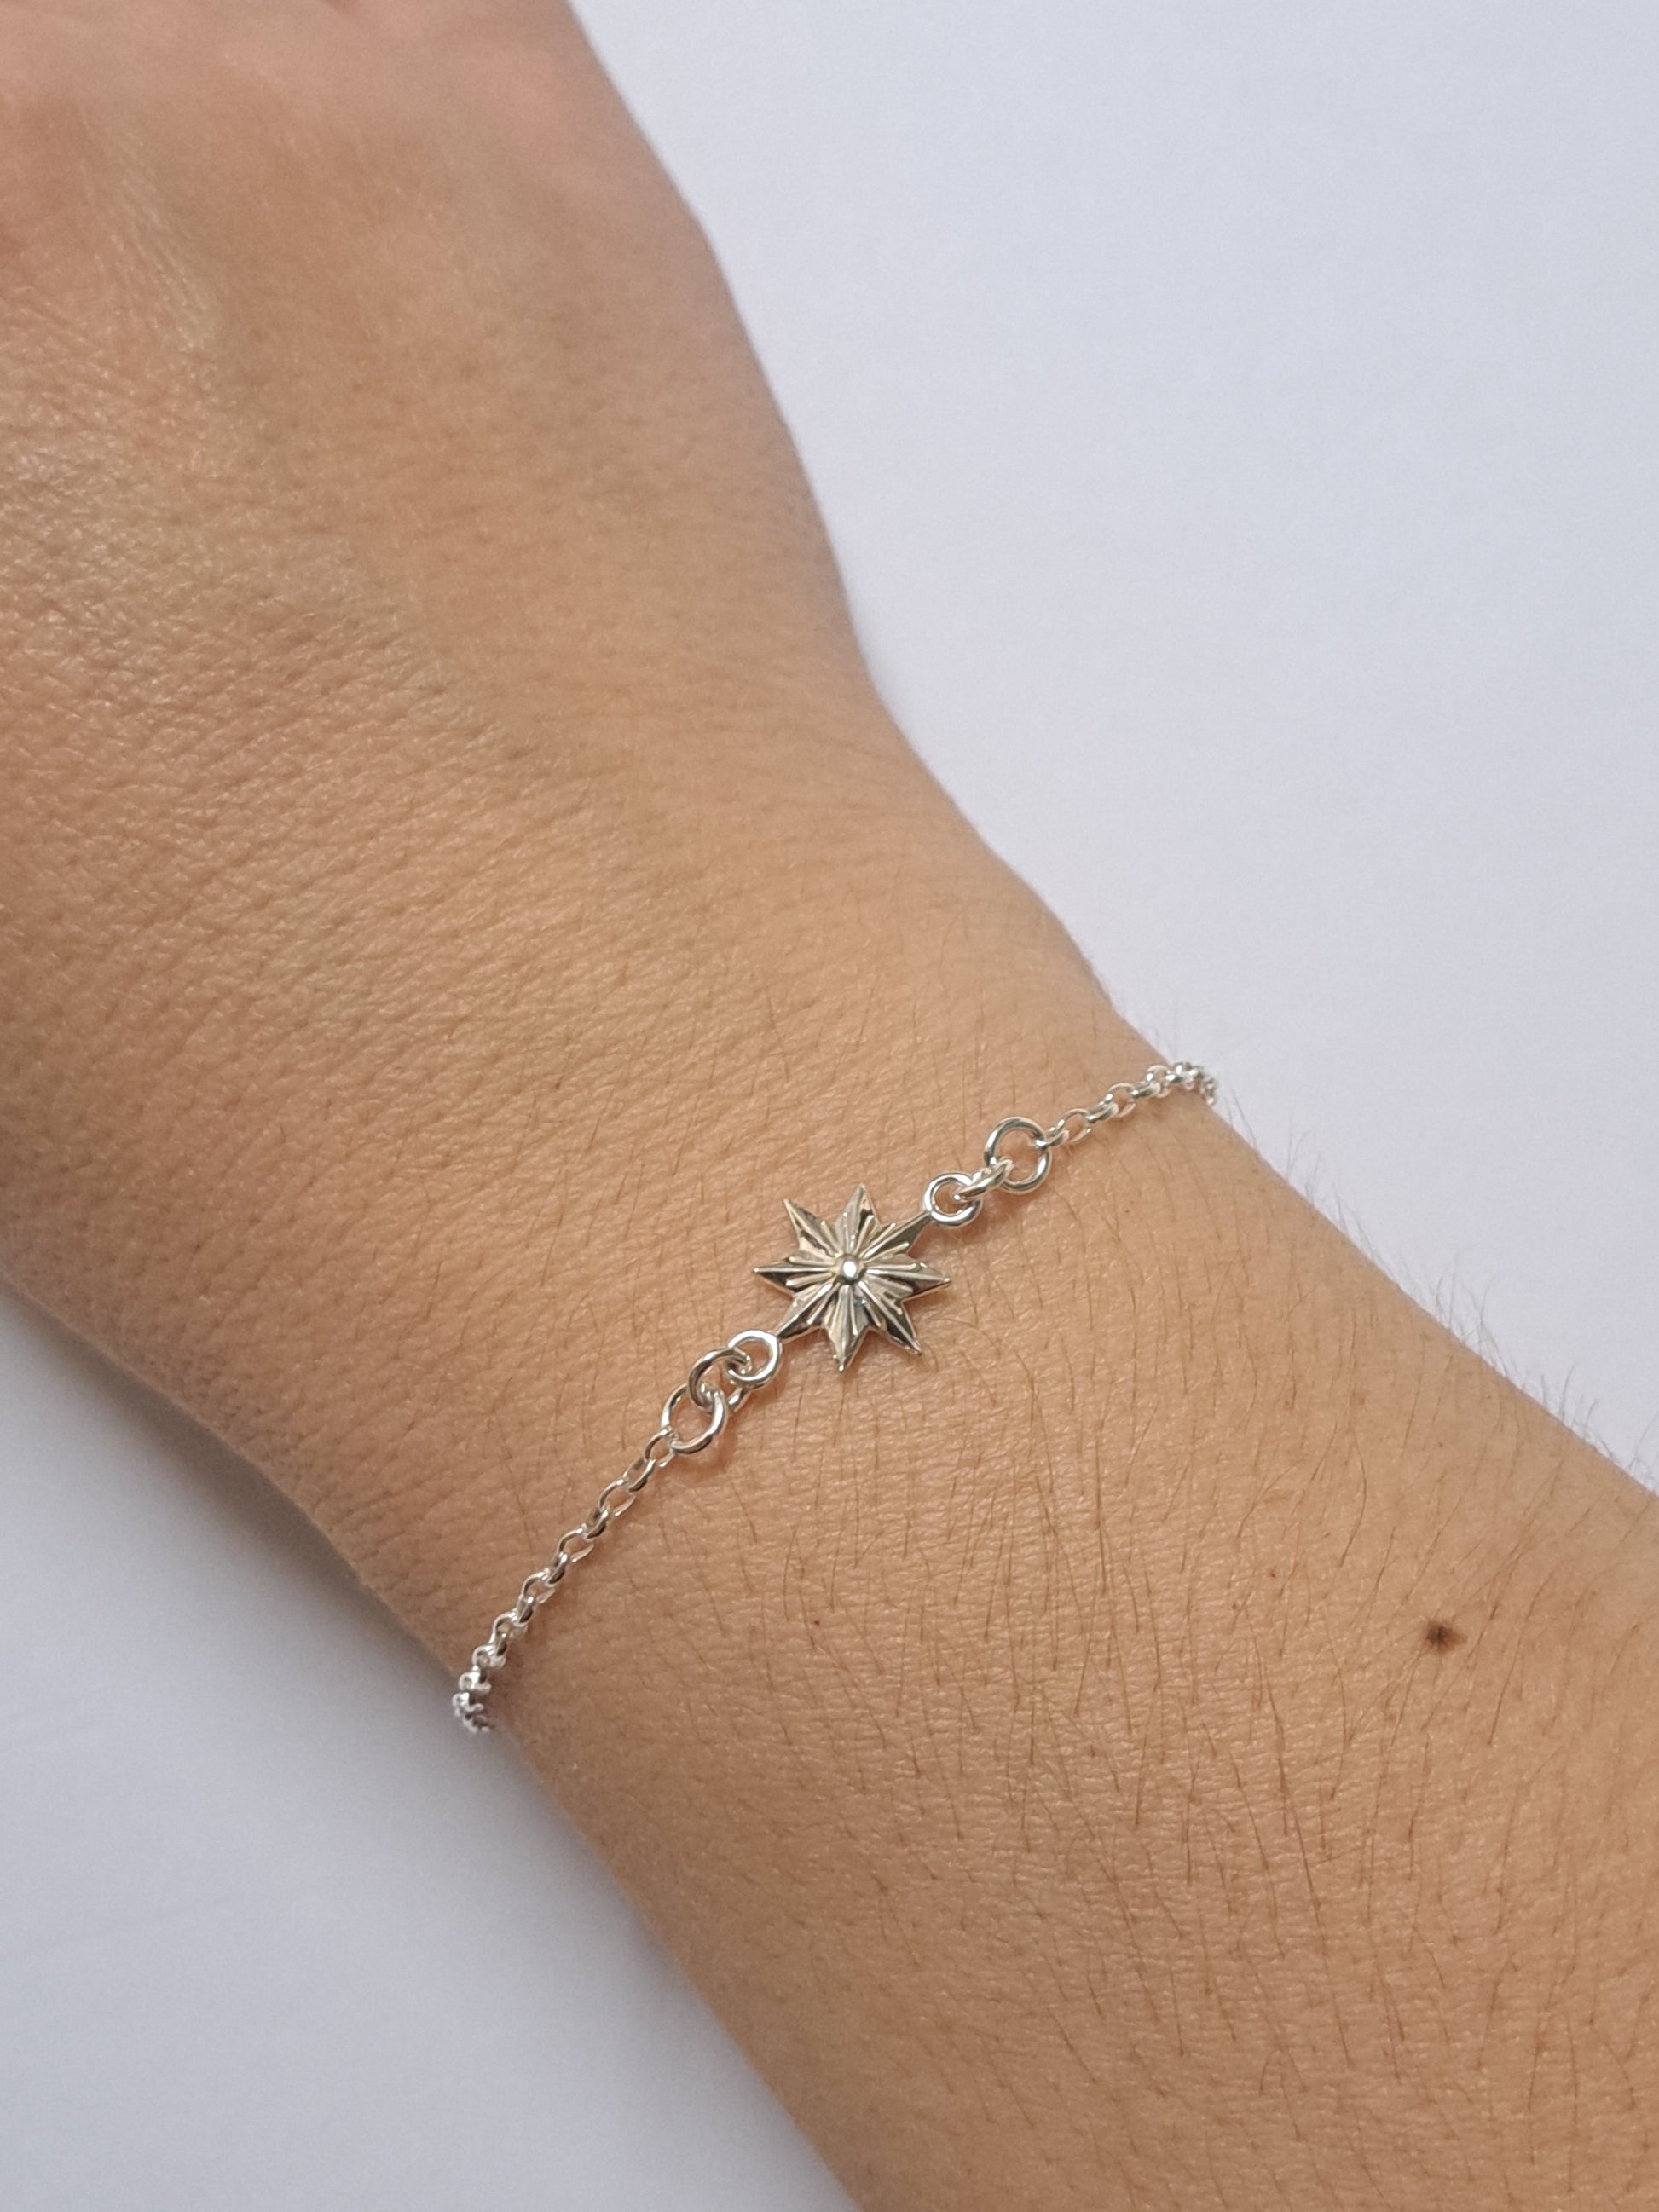 Bracelet étoile fin et élégant en argent. Site de bijoux. France